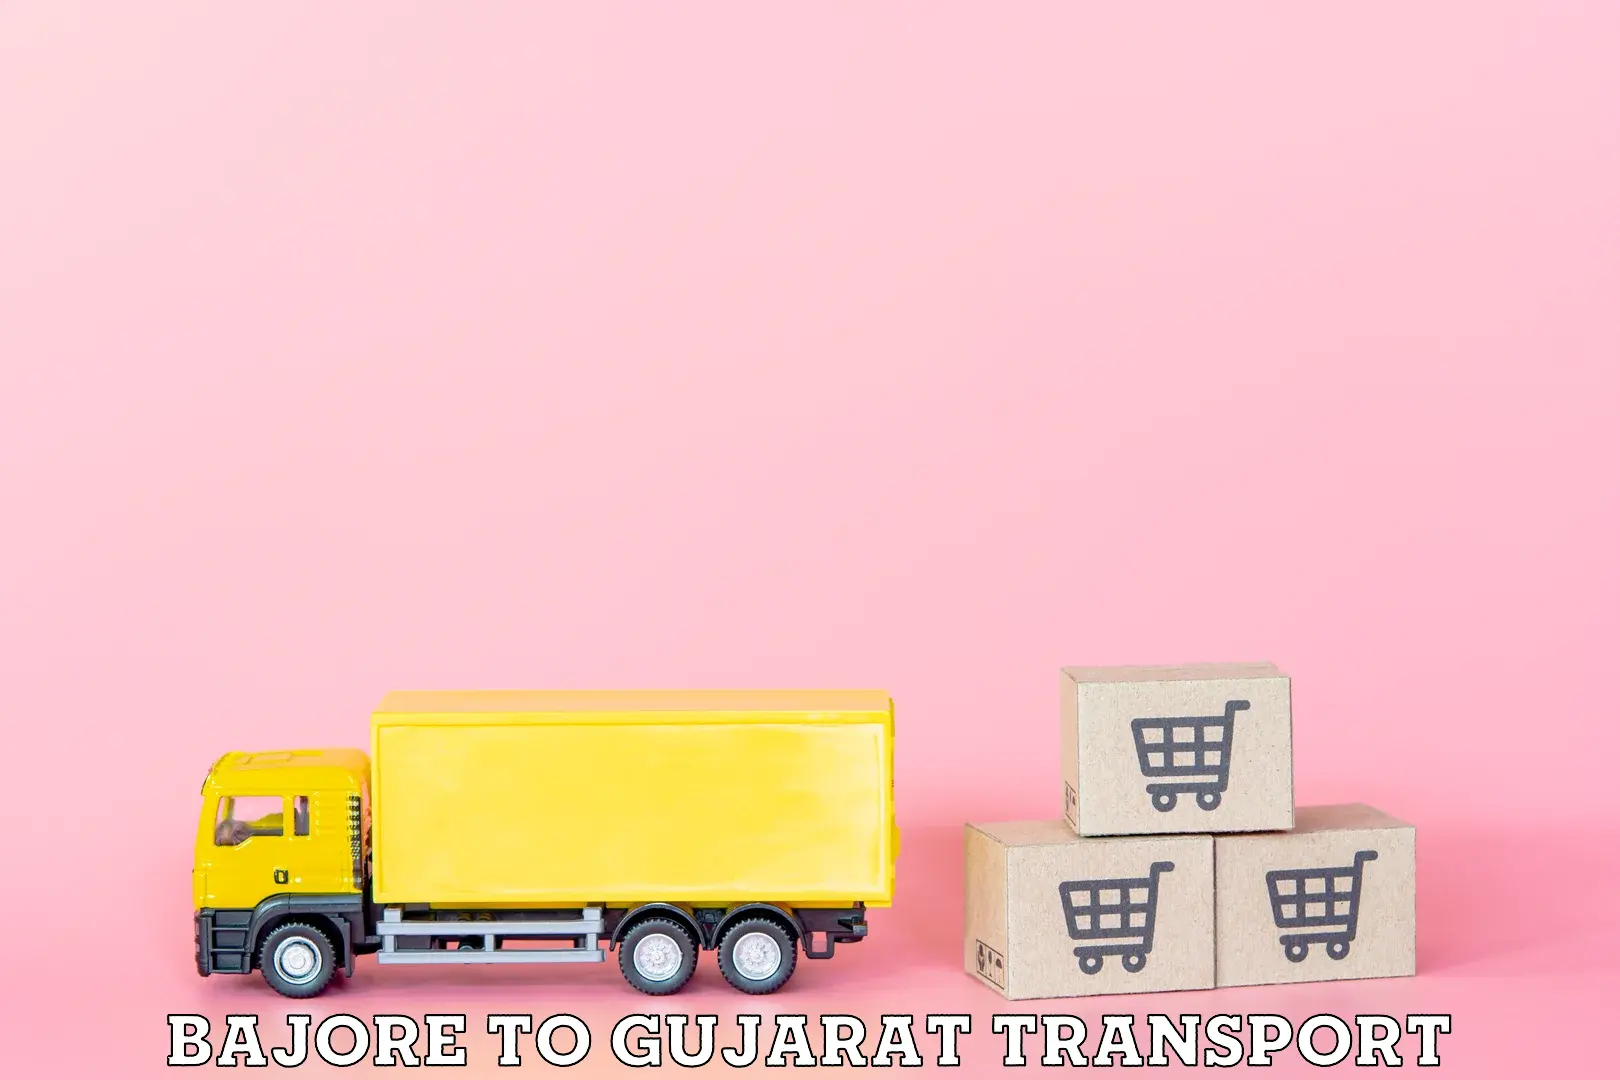 Two wheeler parcel service Bajore to Gujarat